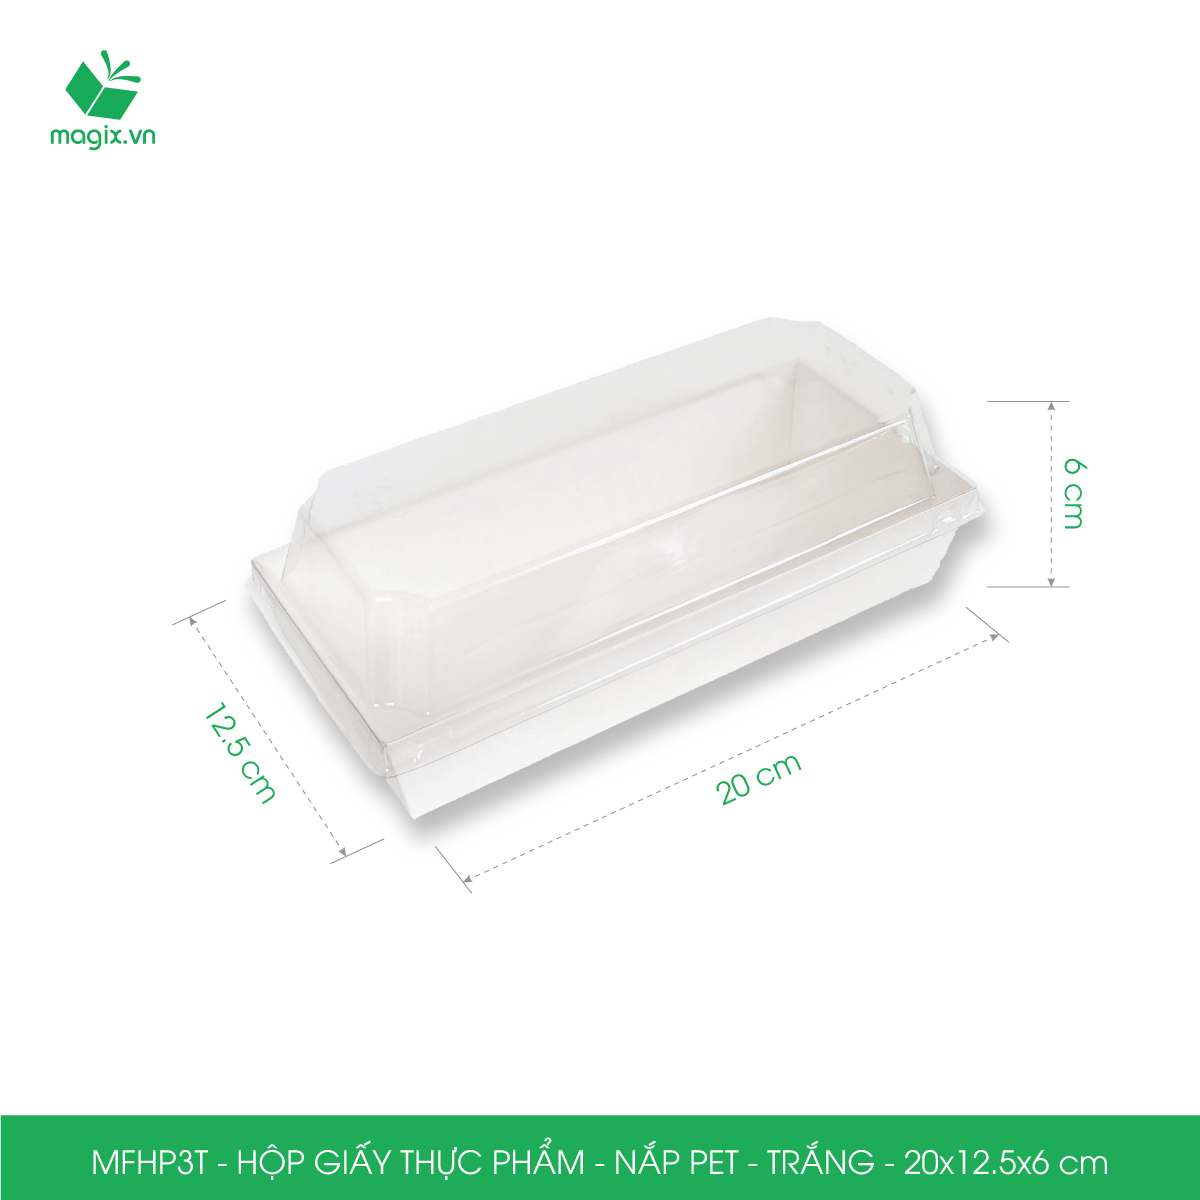 MFHP3T - 20x12.5x6 cm - 25 hộp giấy thực phẩm màu trắng nắp Pet, hộp giấy chữ nhật đựng thức ăn, hộp bánh nắp trong